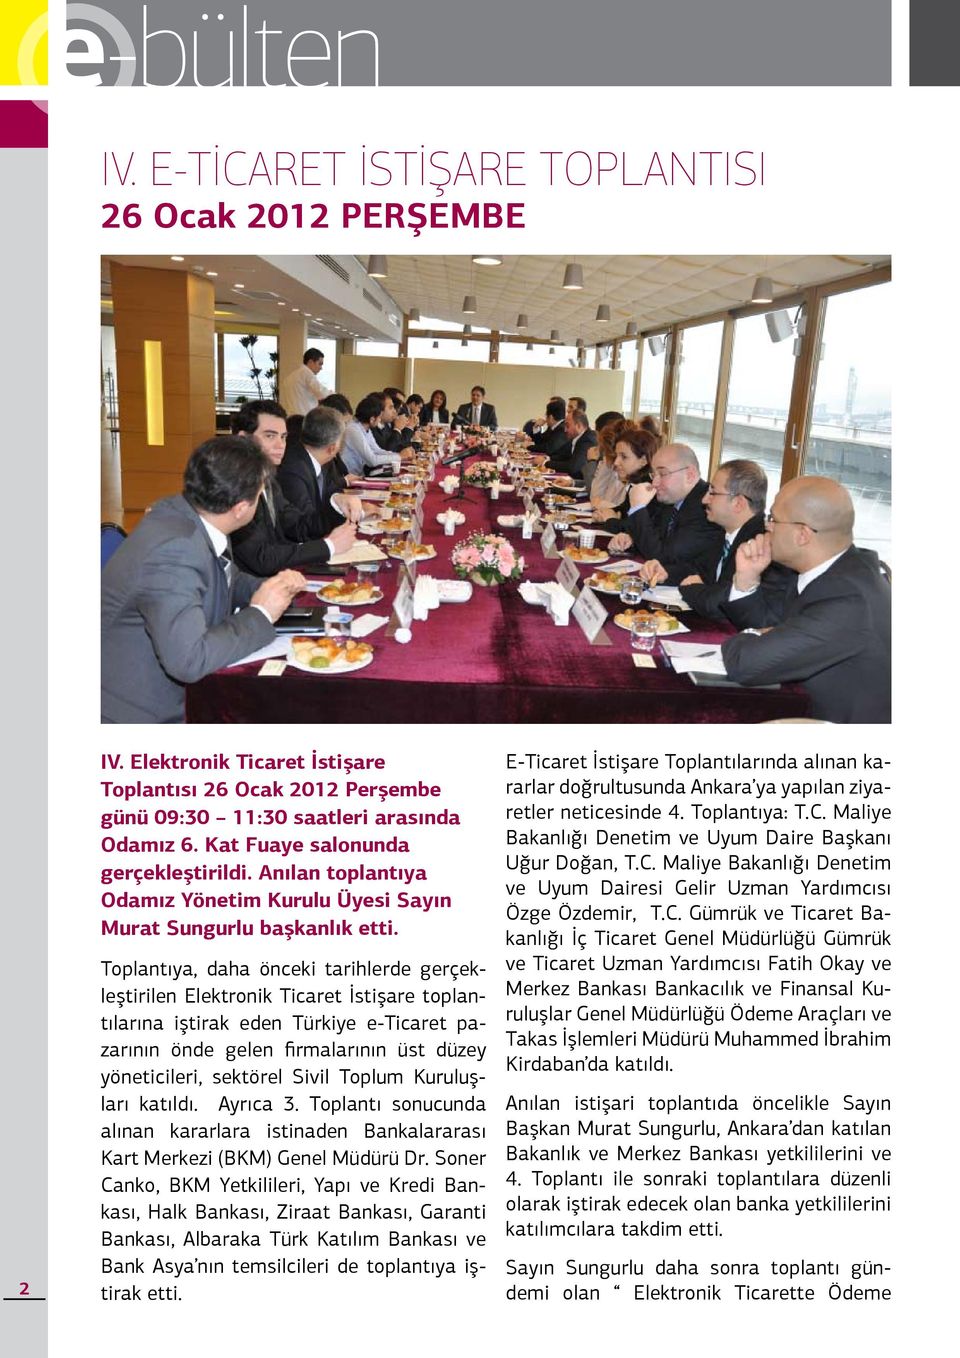 Toplantıya, daha önceki tarihlerde gerçekleştirilen Elektronik Ticaret İstişare toplantılarına iştirak eden Türkiye e-ticaret pazarının önde gelen firmalarının üst düzey yöneticileri, sektörel Sivil